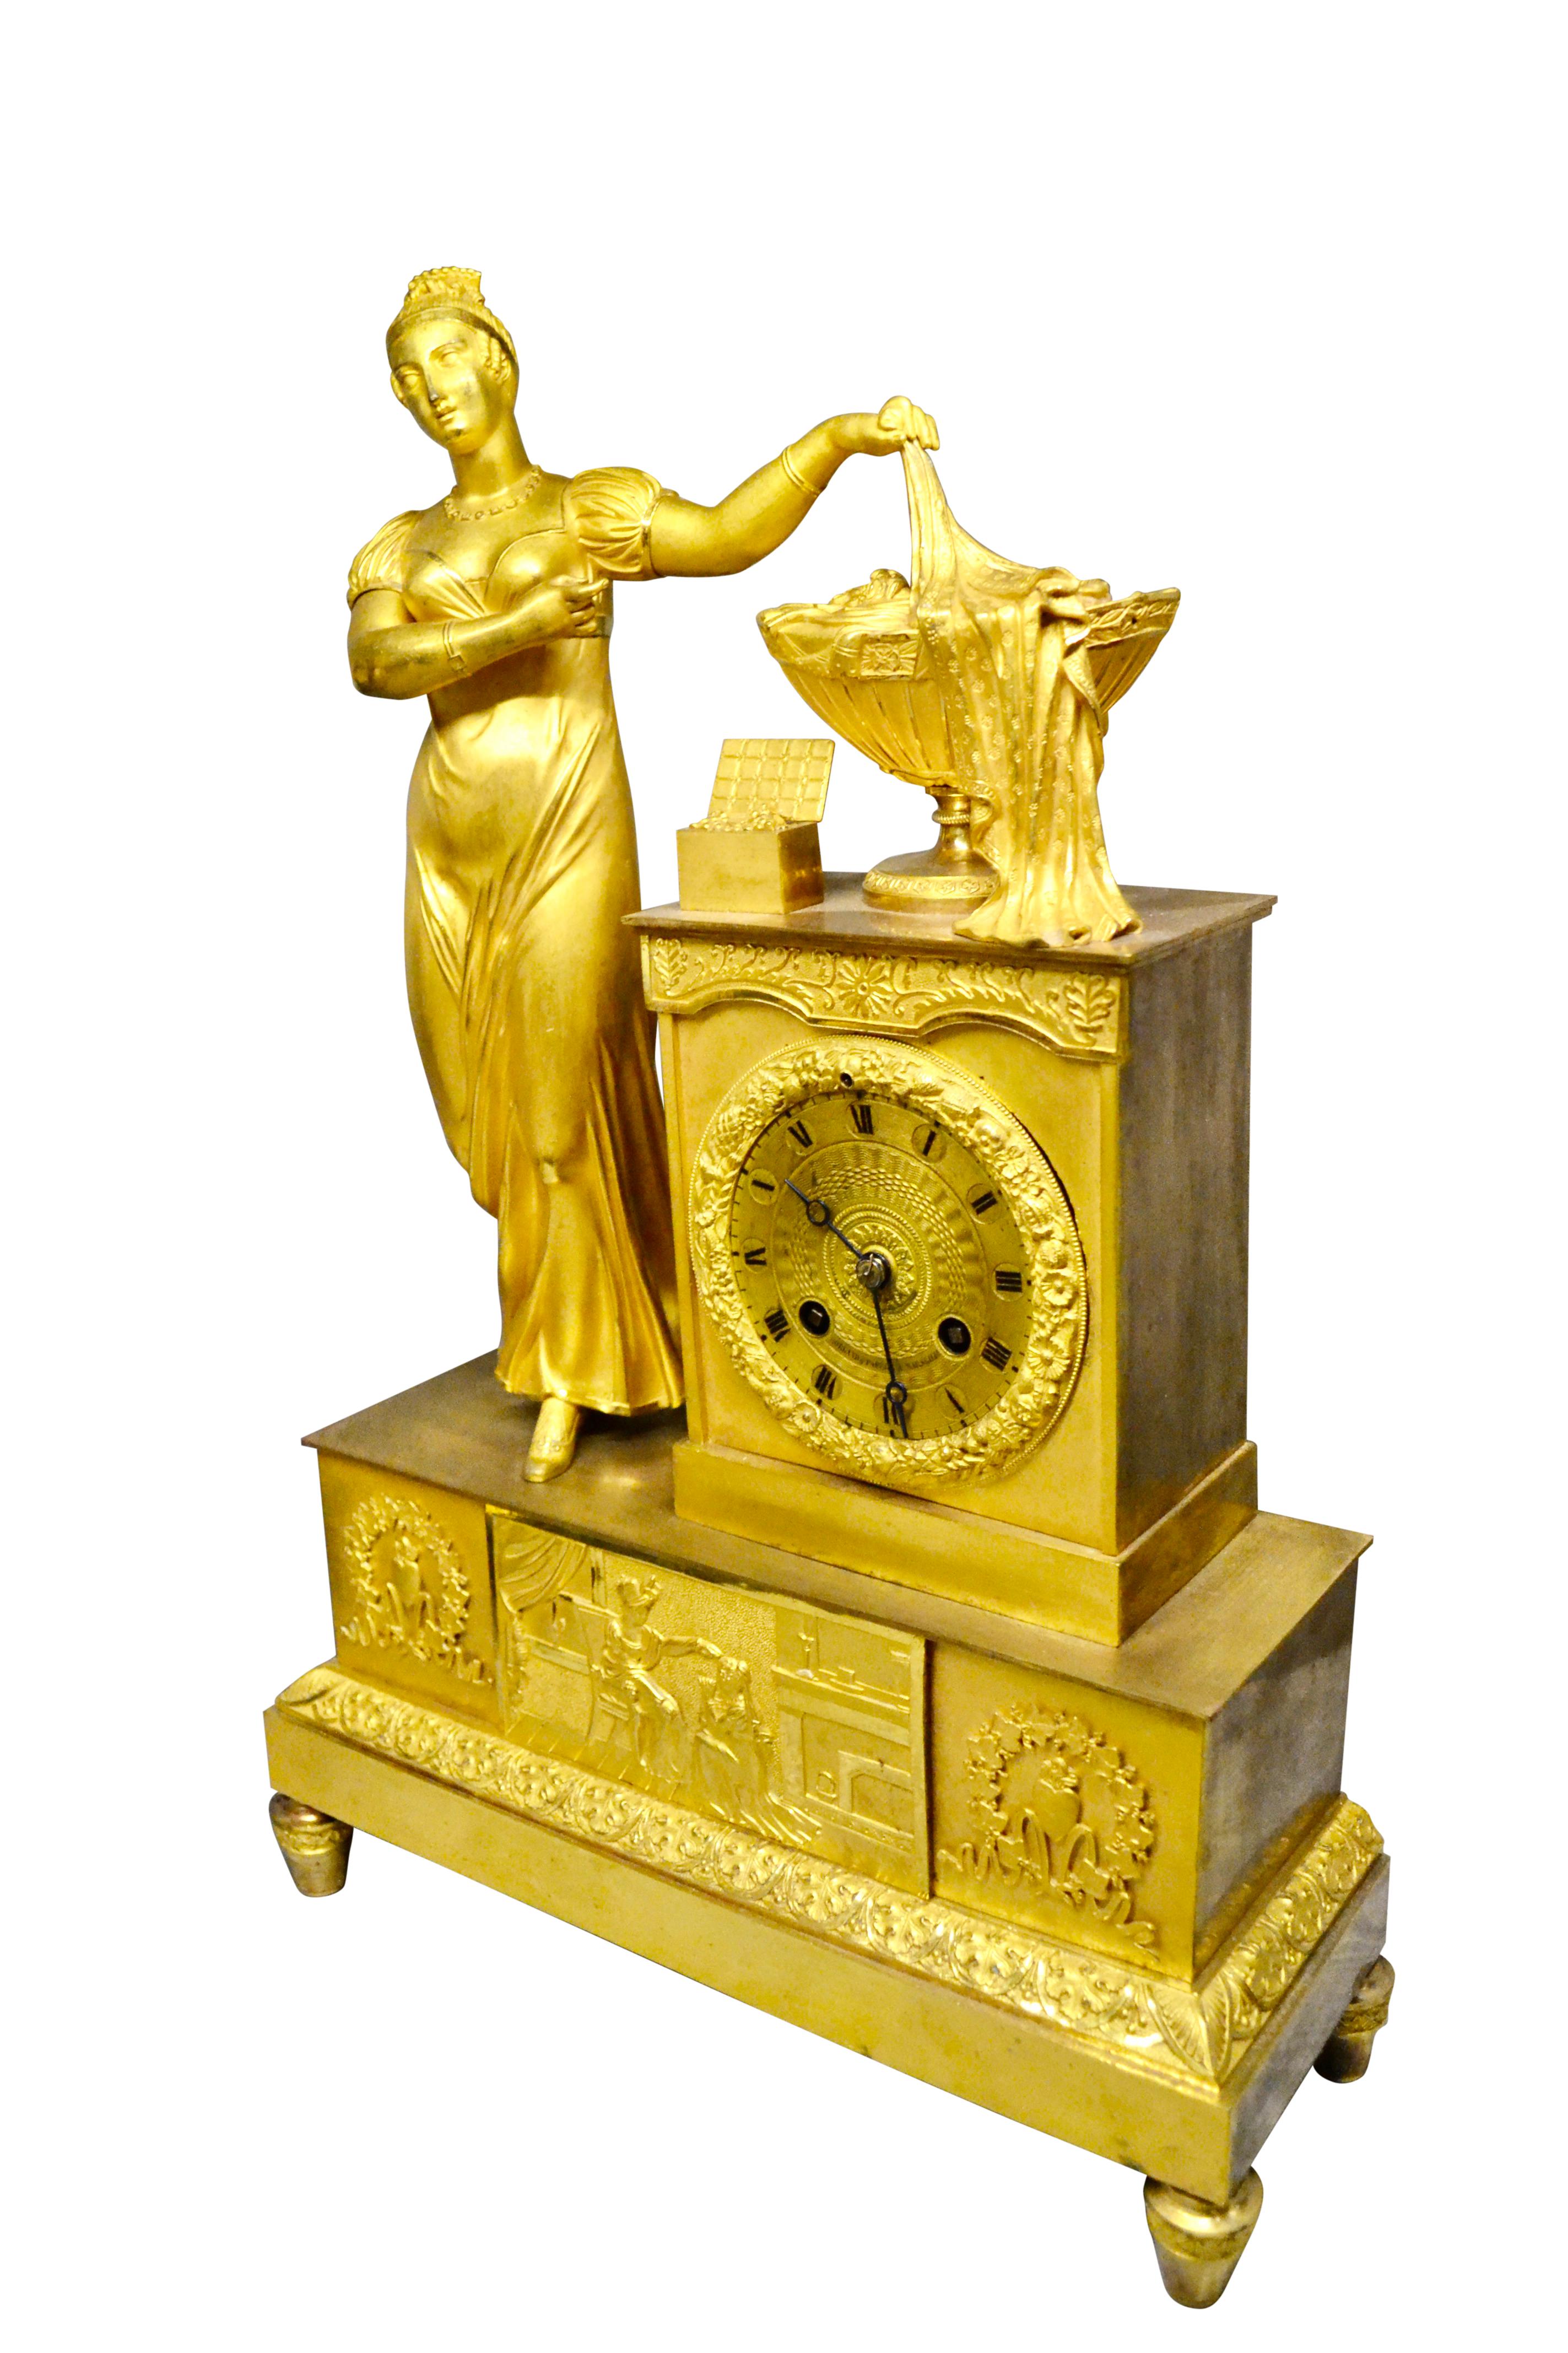 Pendule de cheminée Empire en bronze doré représentant une dame classique debout sur le côté gauche du socle de l'horloge, le bras gauche tendu tenant une draperie dissimulant le contenu d'une urne dorée. L'urne contient de nombreux objets, dont des